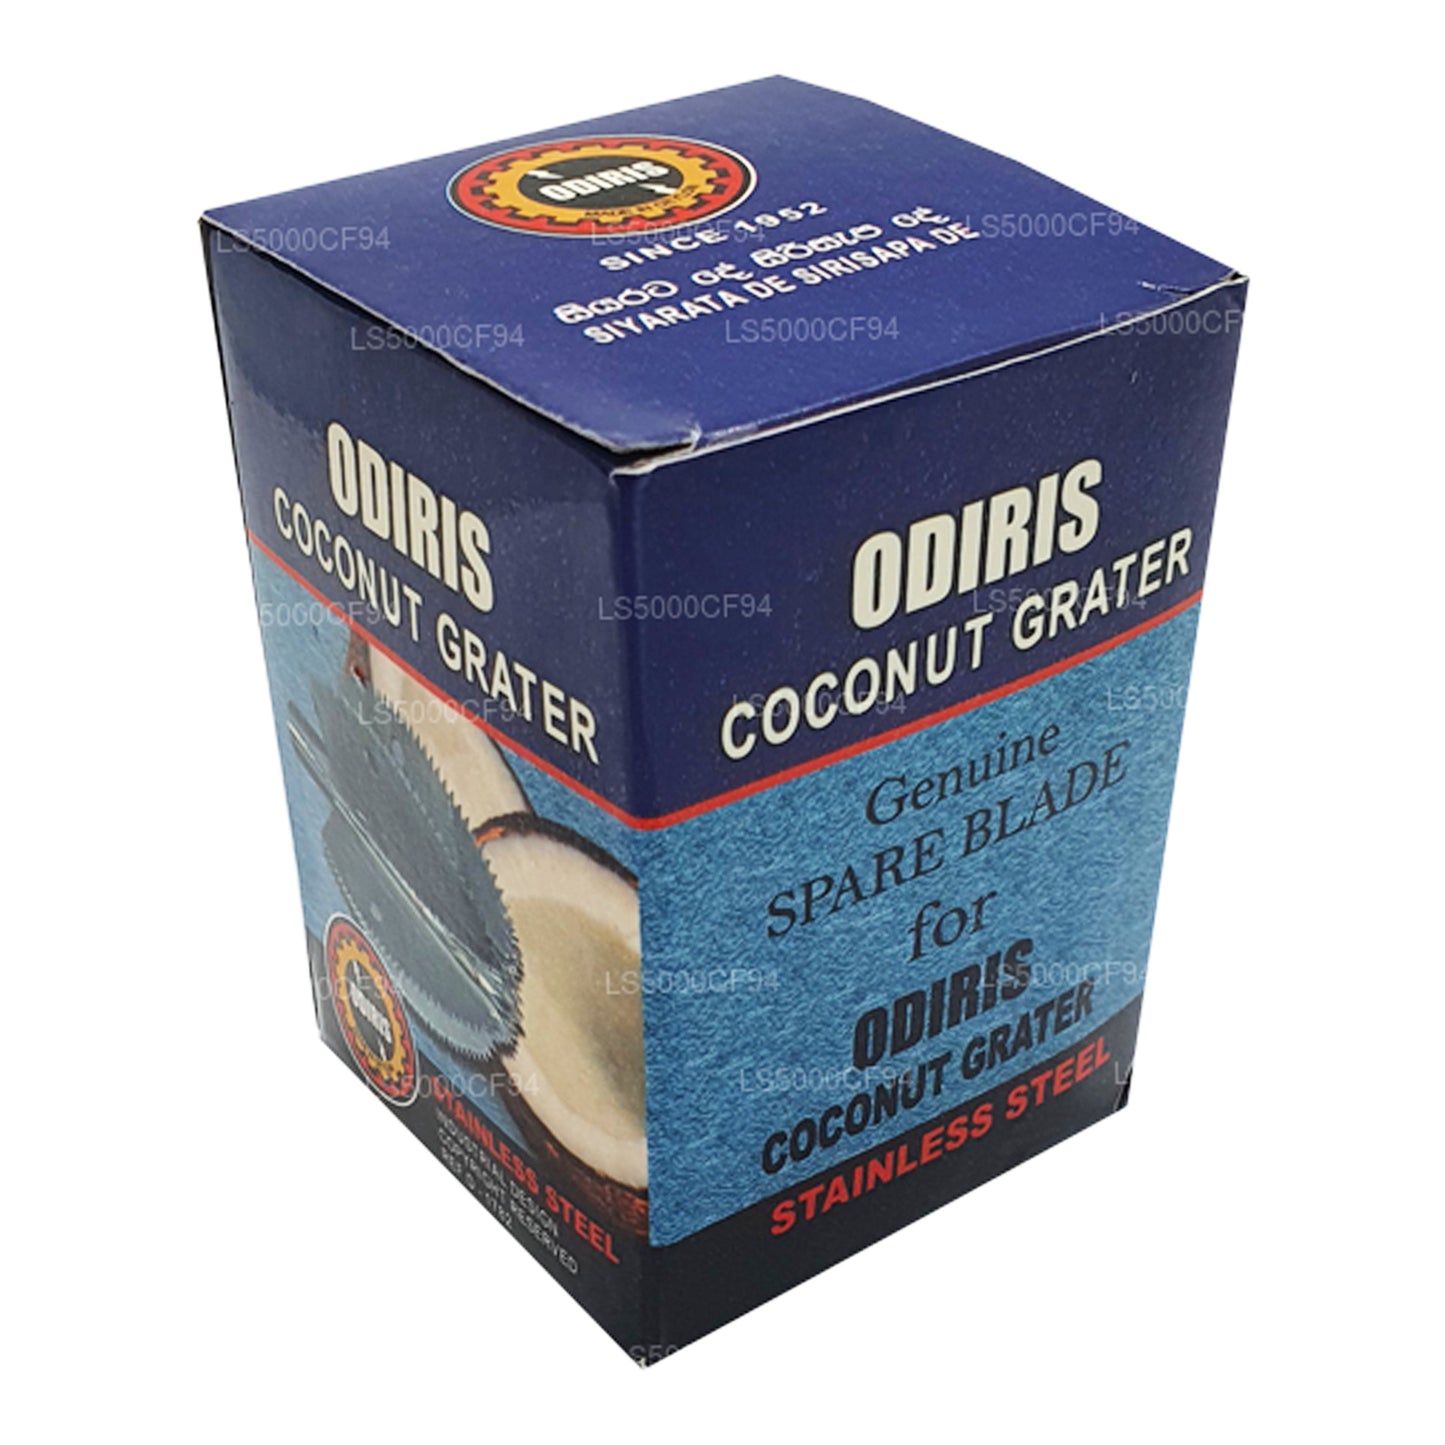 Cuchilla de repuesto para raspador de coco Odiris, 6,5 cm